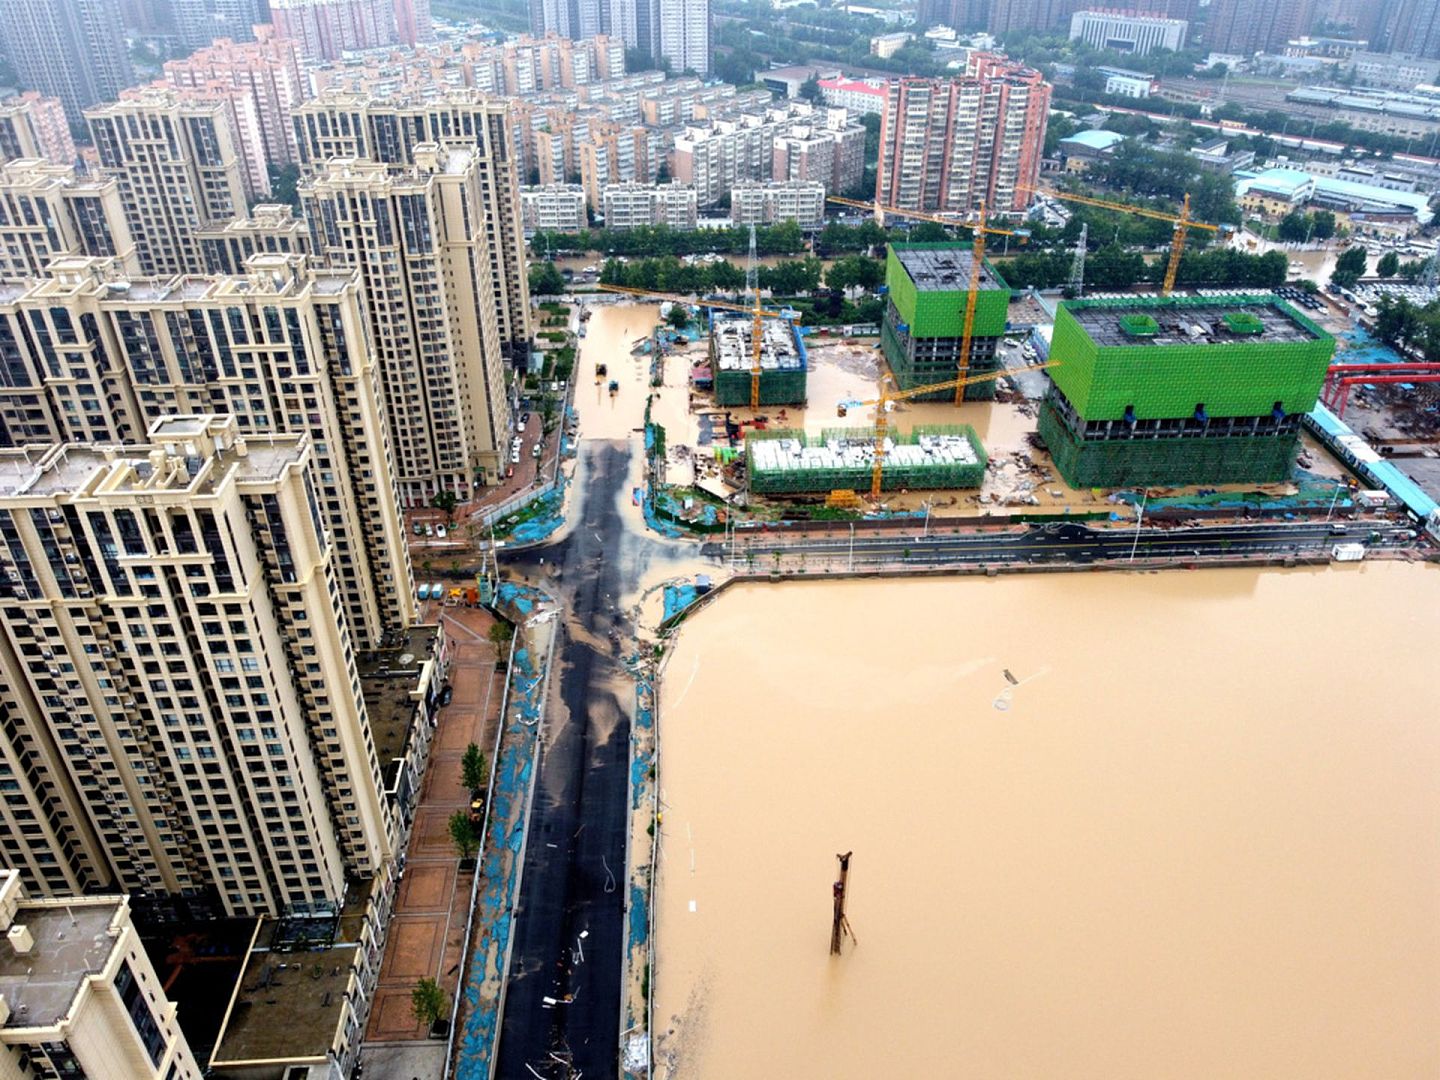 郑州遭遇的特大暴雨和洪水显然超过了一般城市市政建设的排水承载能力。（路透社）